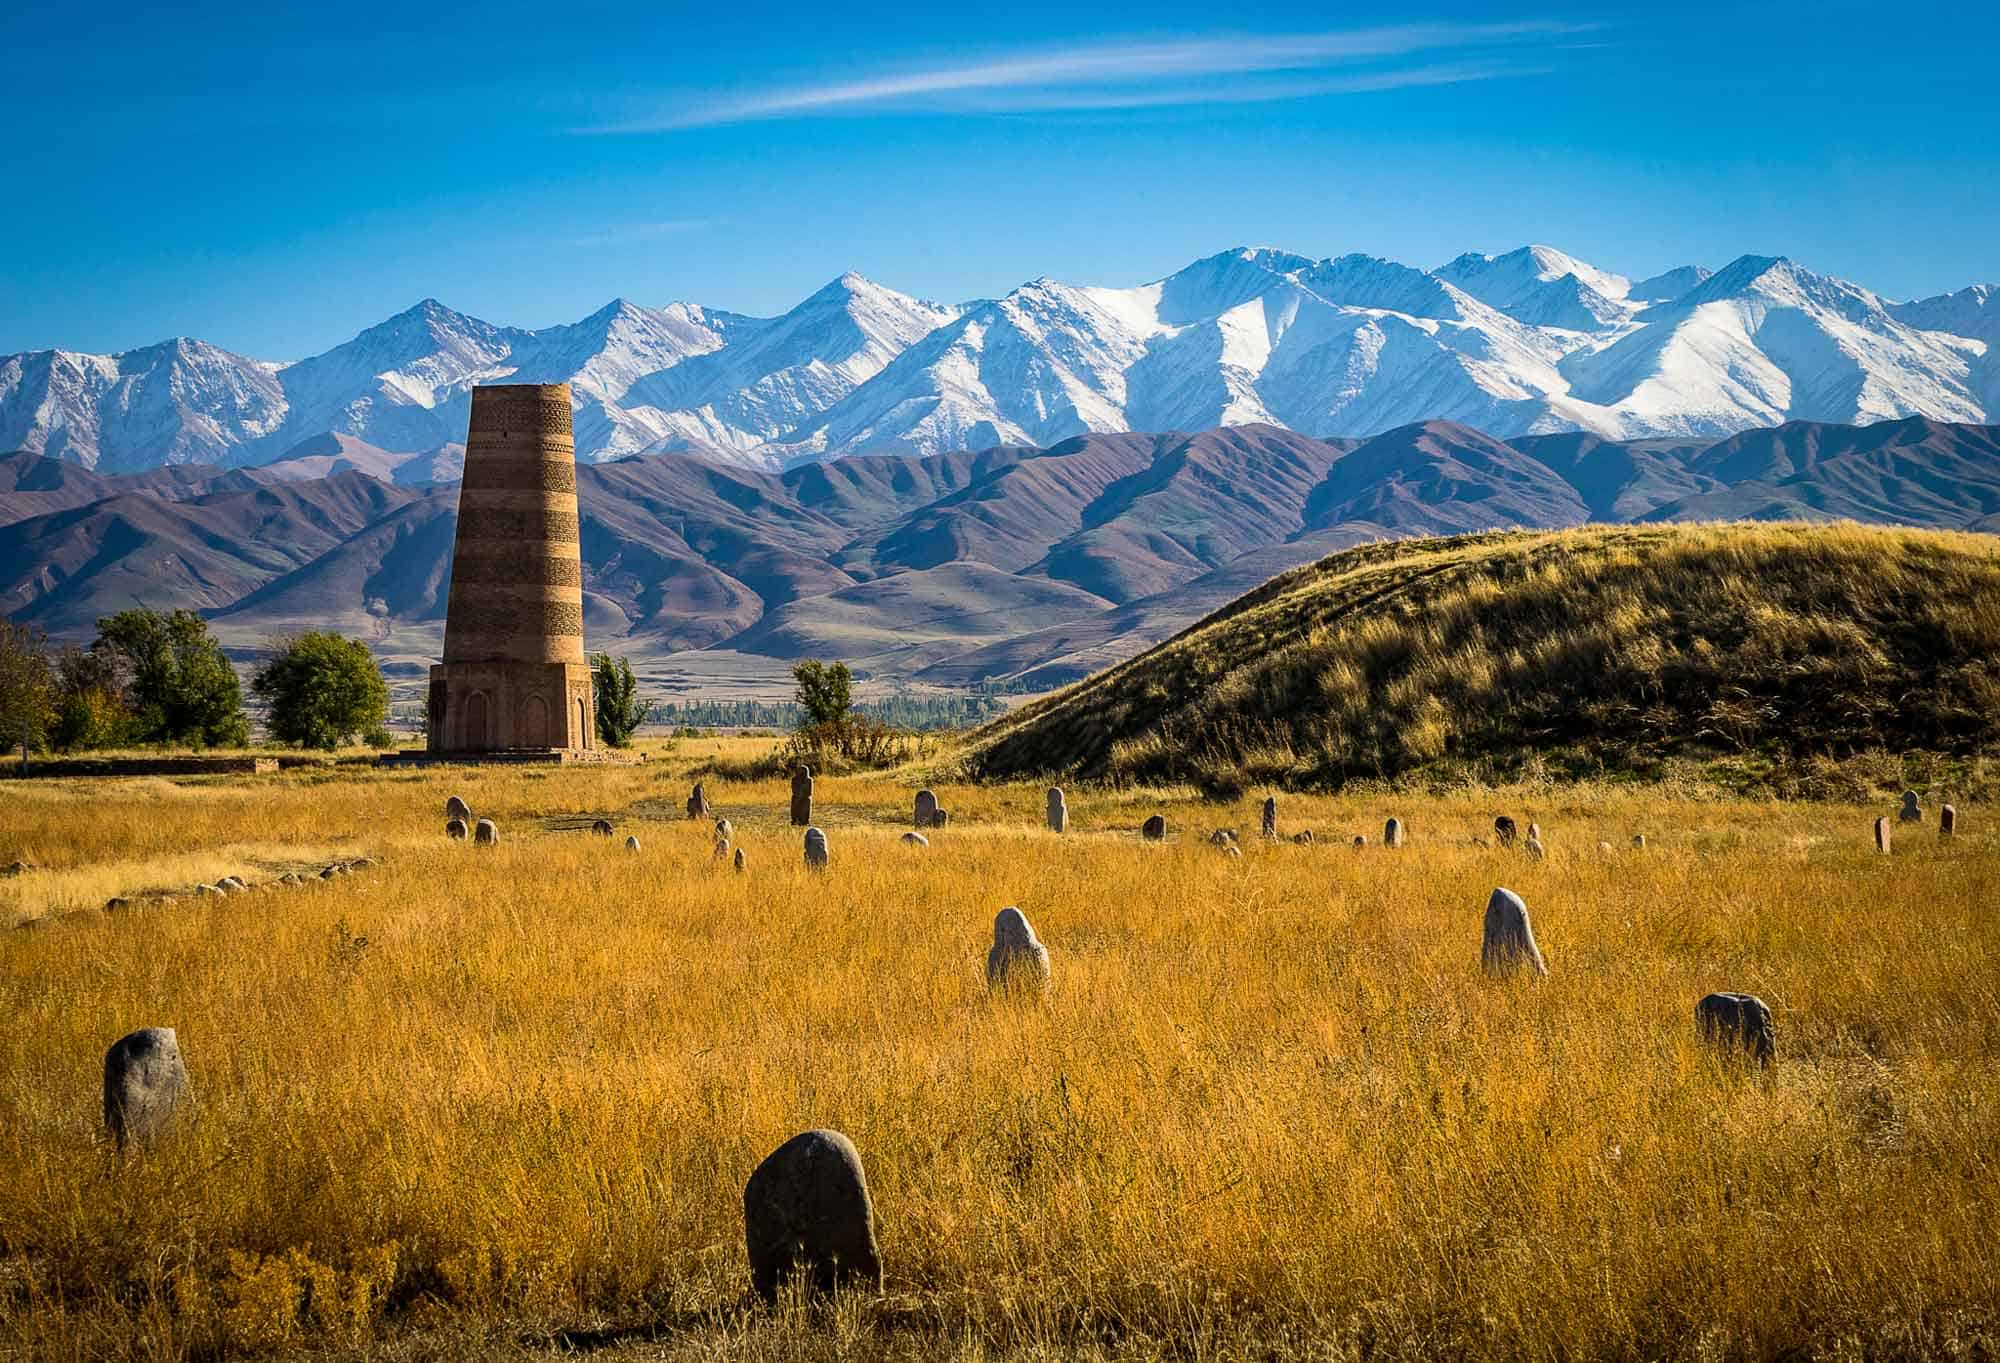 kyrgyzstan tourism places